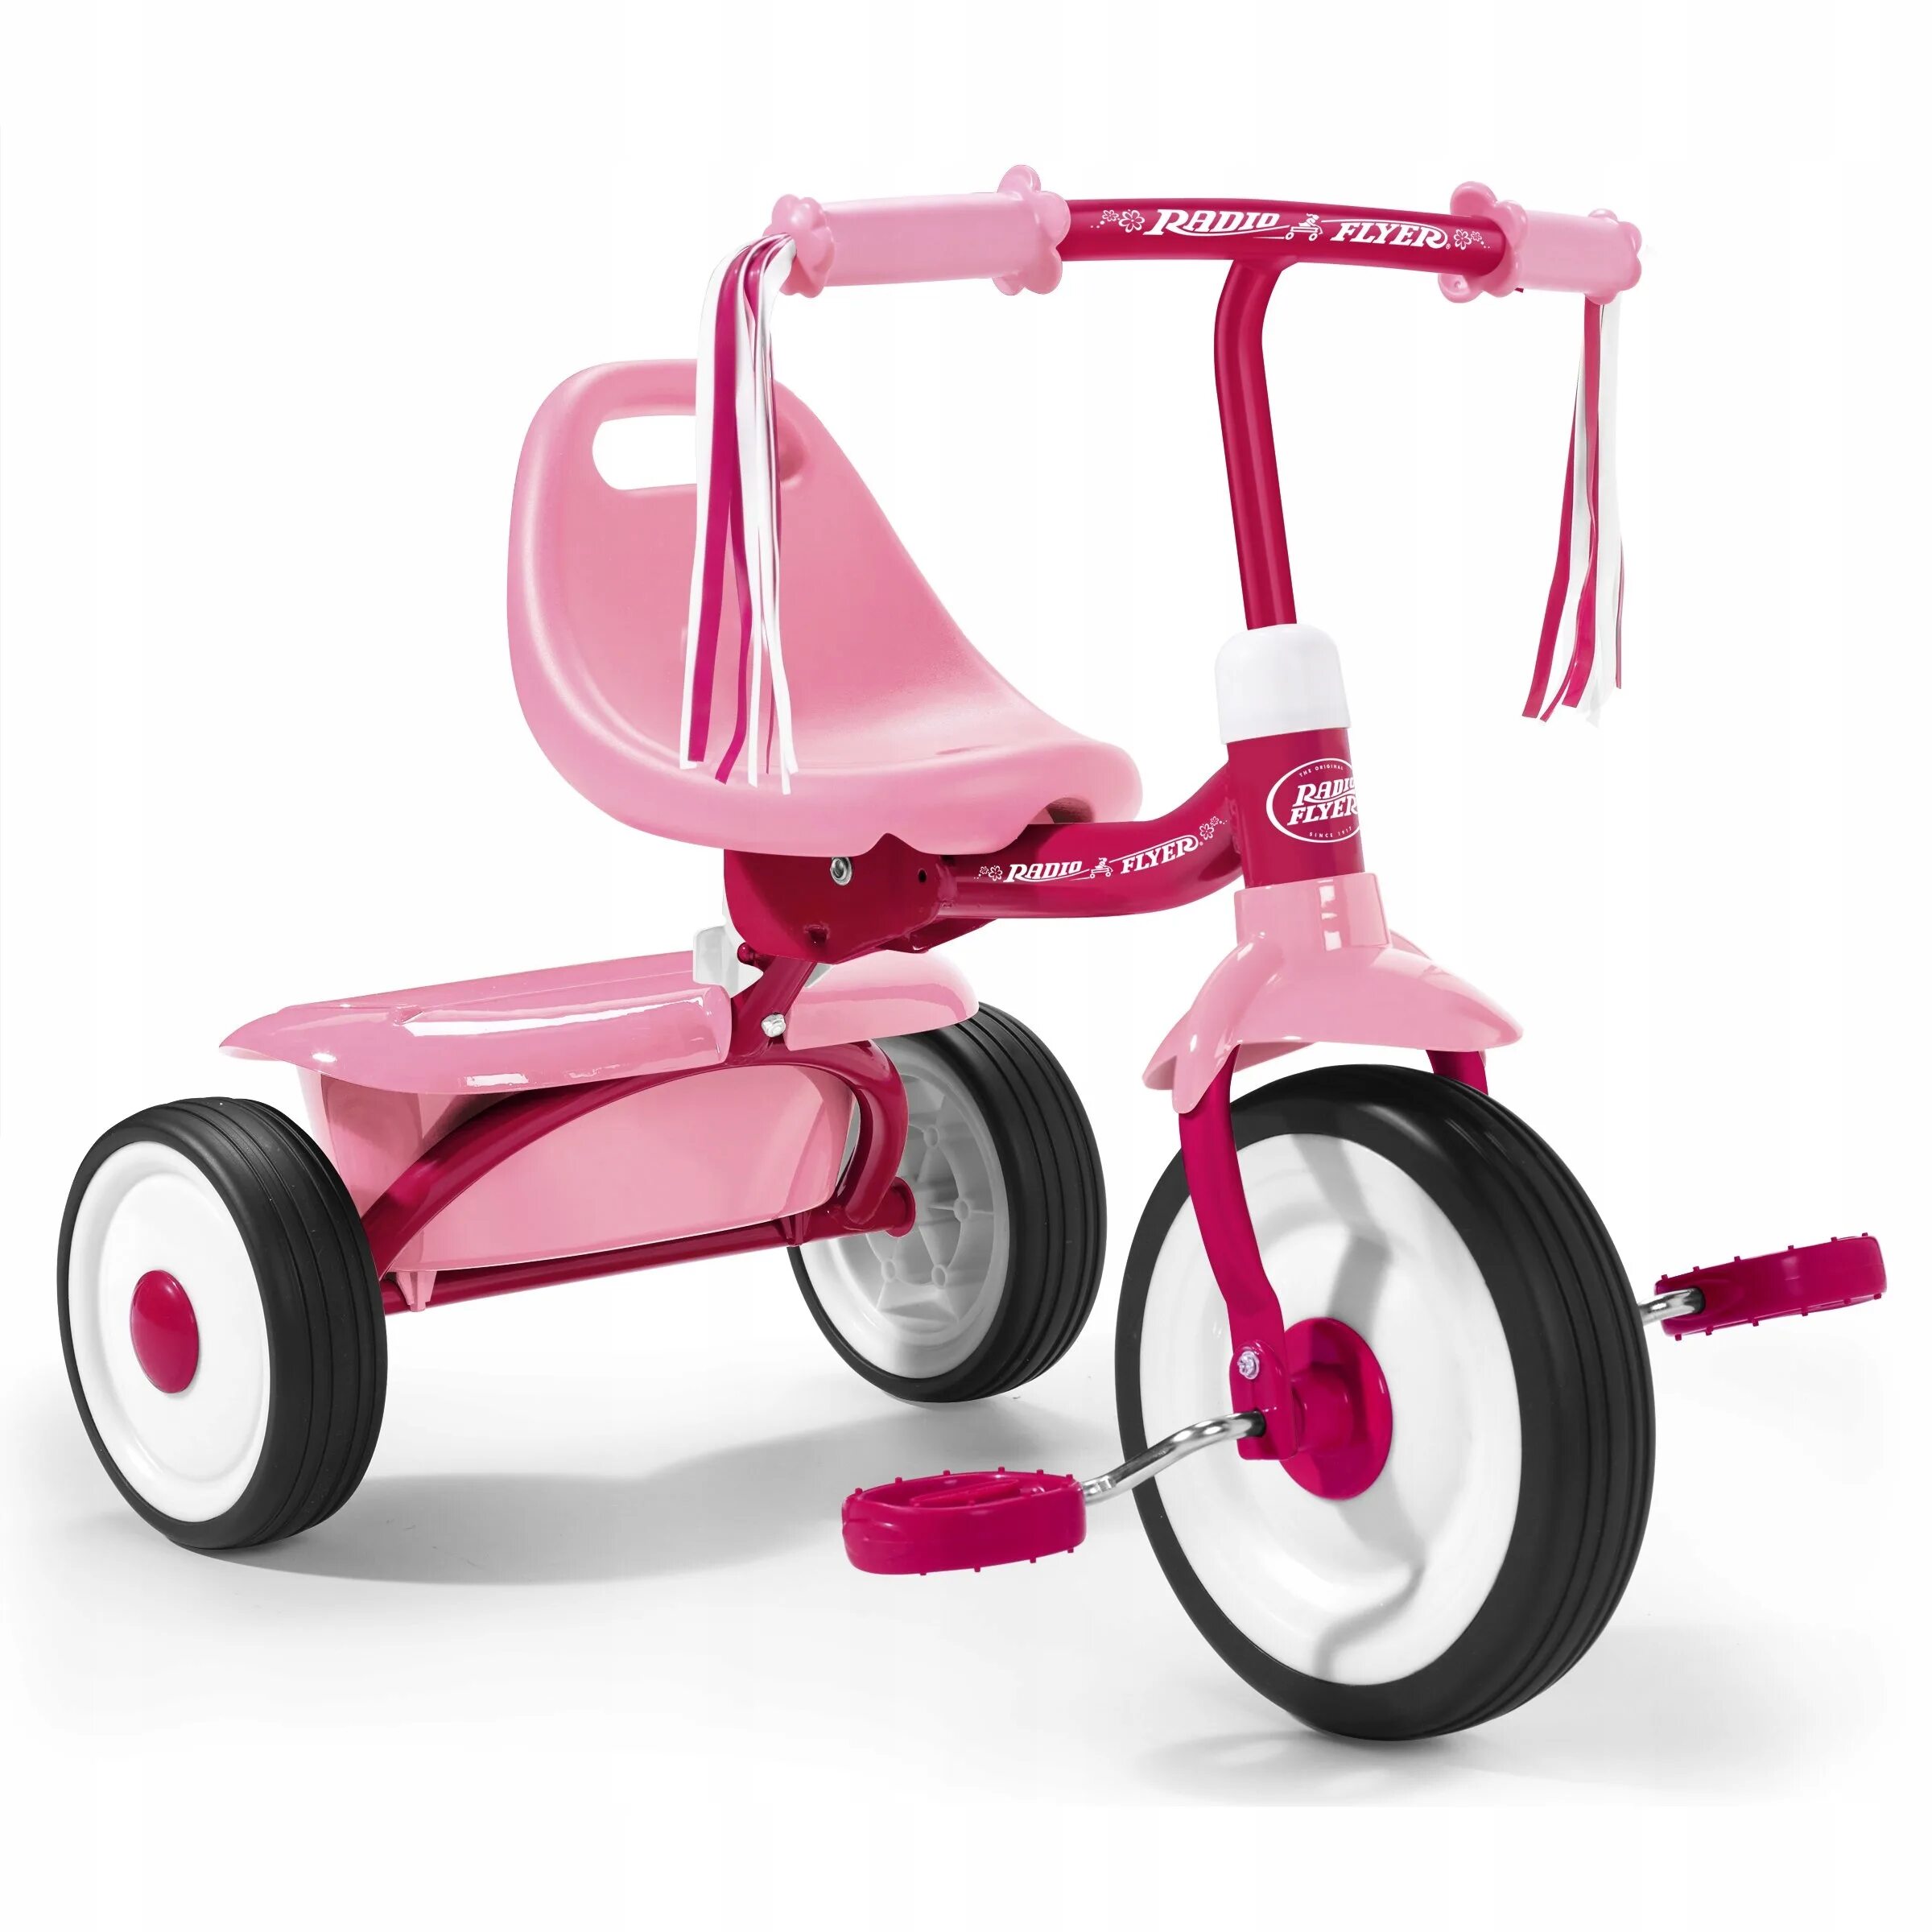 Какой велосипед купить ребенку 10 лет. Radio Flyer велосипед трехколесный. Kids Trike велосипед трехколесный. Трехколесный велосипед Baby Land ts4237c-2рс. Велосипед TCV 083470 трехколесный.